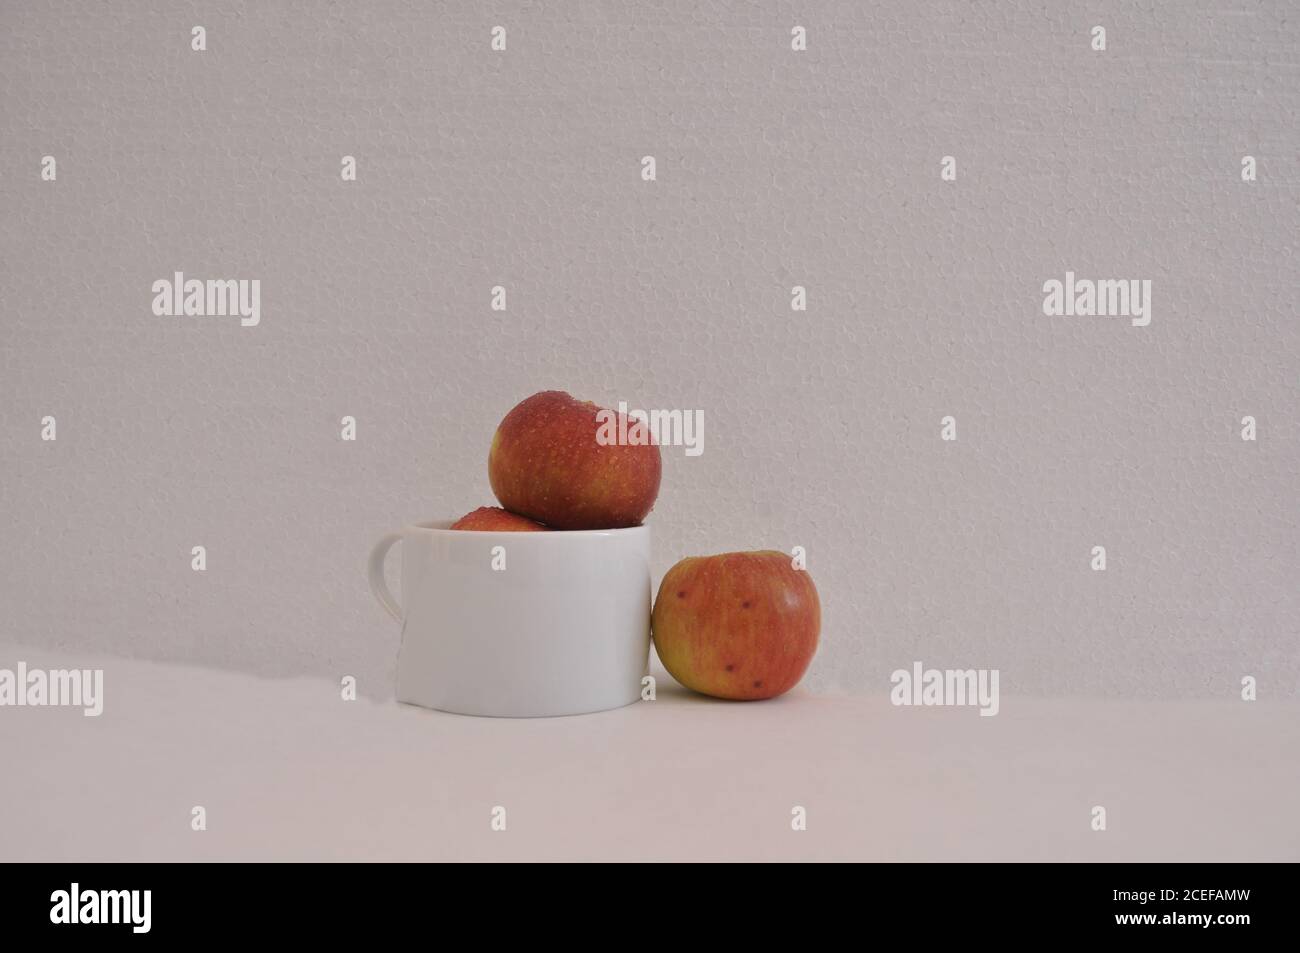 Pommes rouges, dans une tasse de café en céramique blanche, pleine, avec une pomme sur le côté, photo conceptuelle, fond blanc, Brésil, Amérique du Sud Banque D'Images